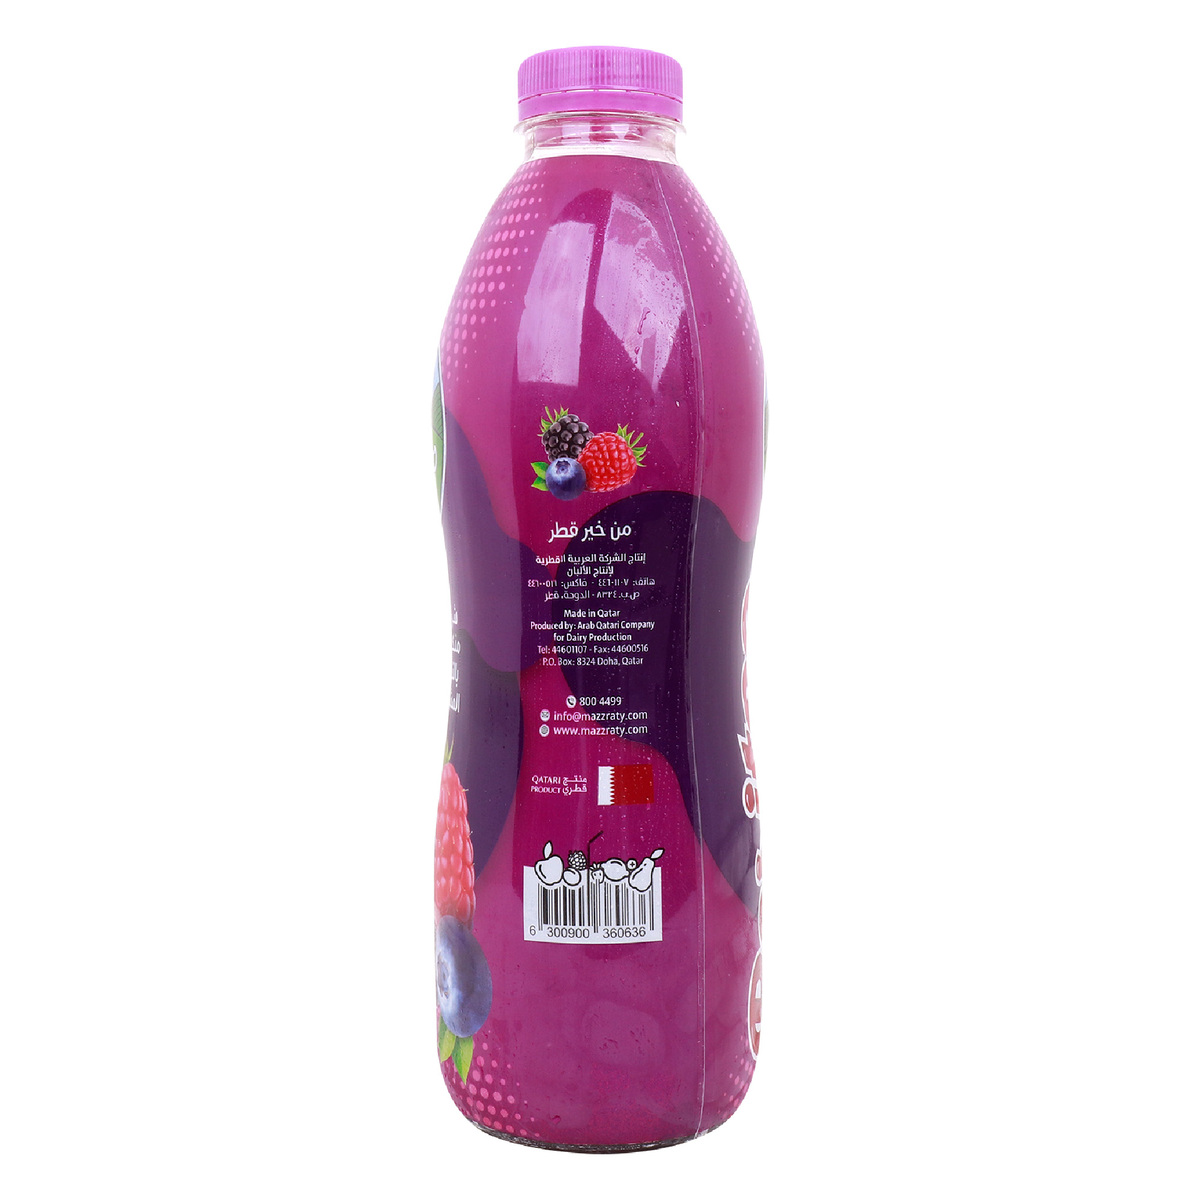 Mazzraty Beritoo Mix Berries Flavored Drink 1Litre